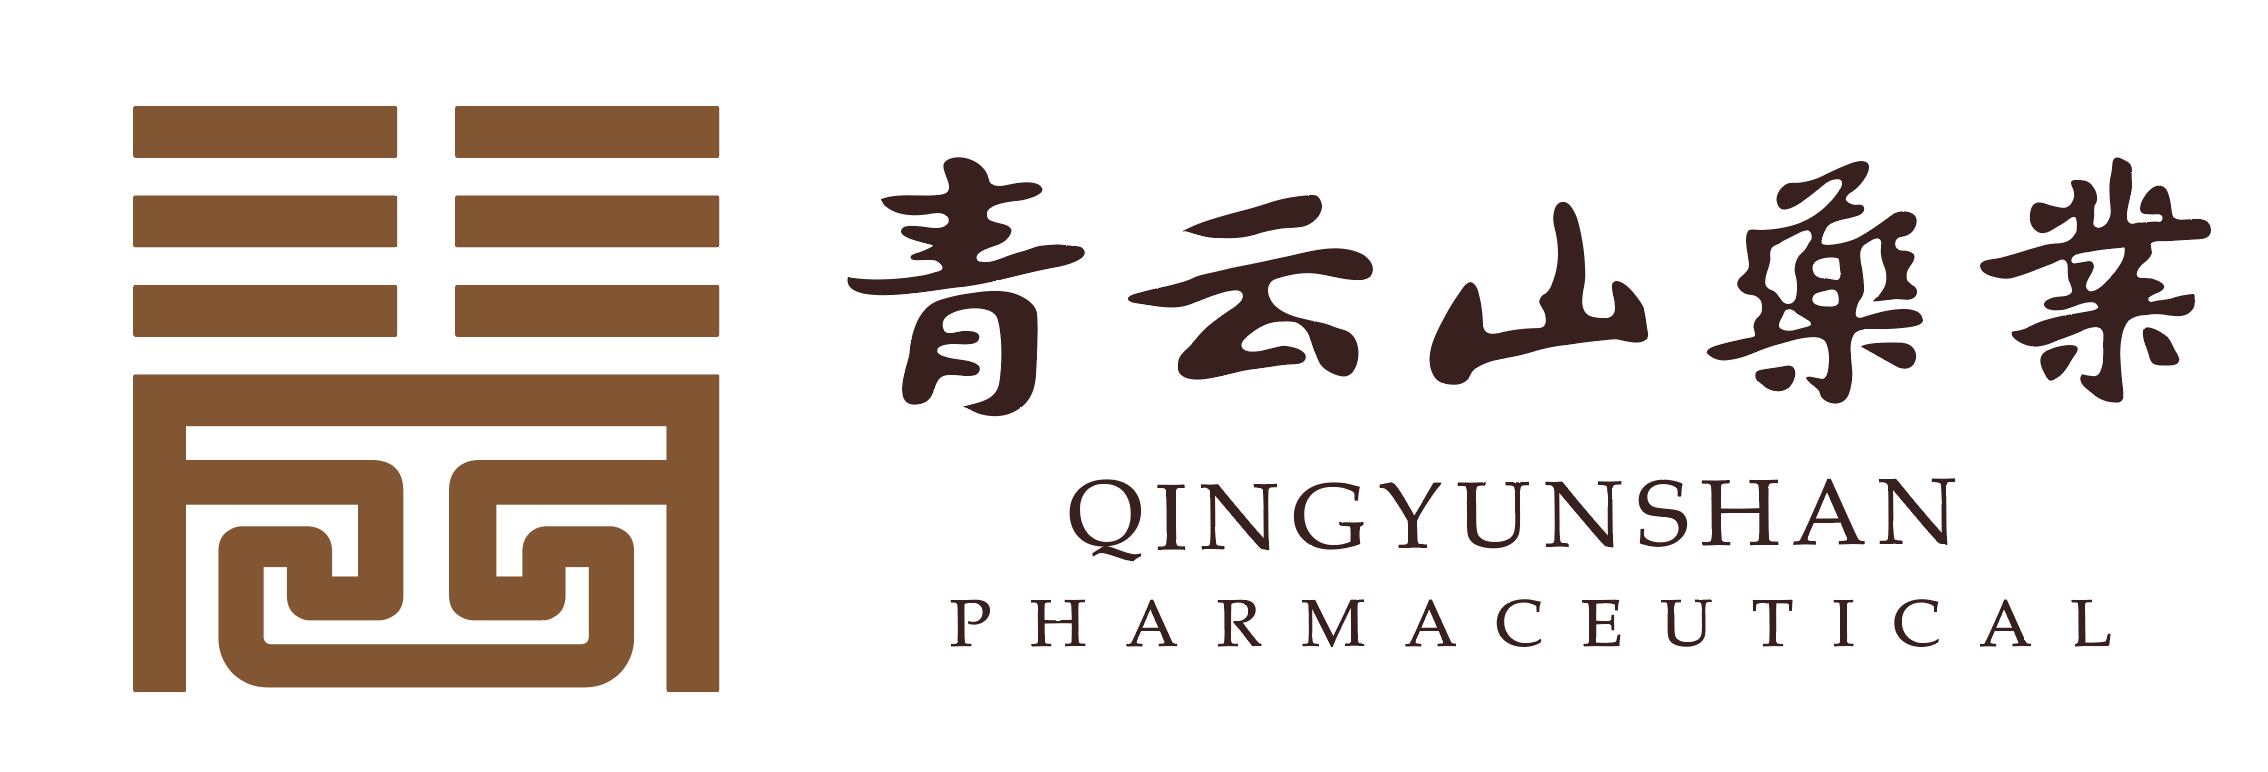 Guangdong Qingyunshan Pharmaceutical Co., Ltd.